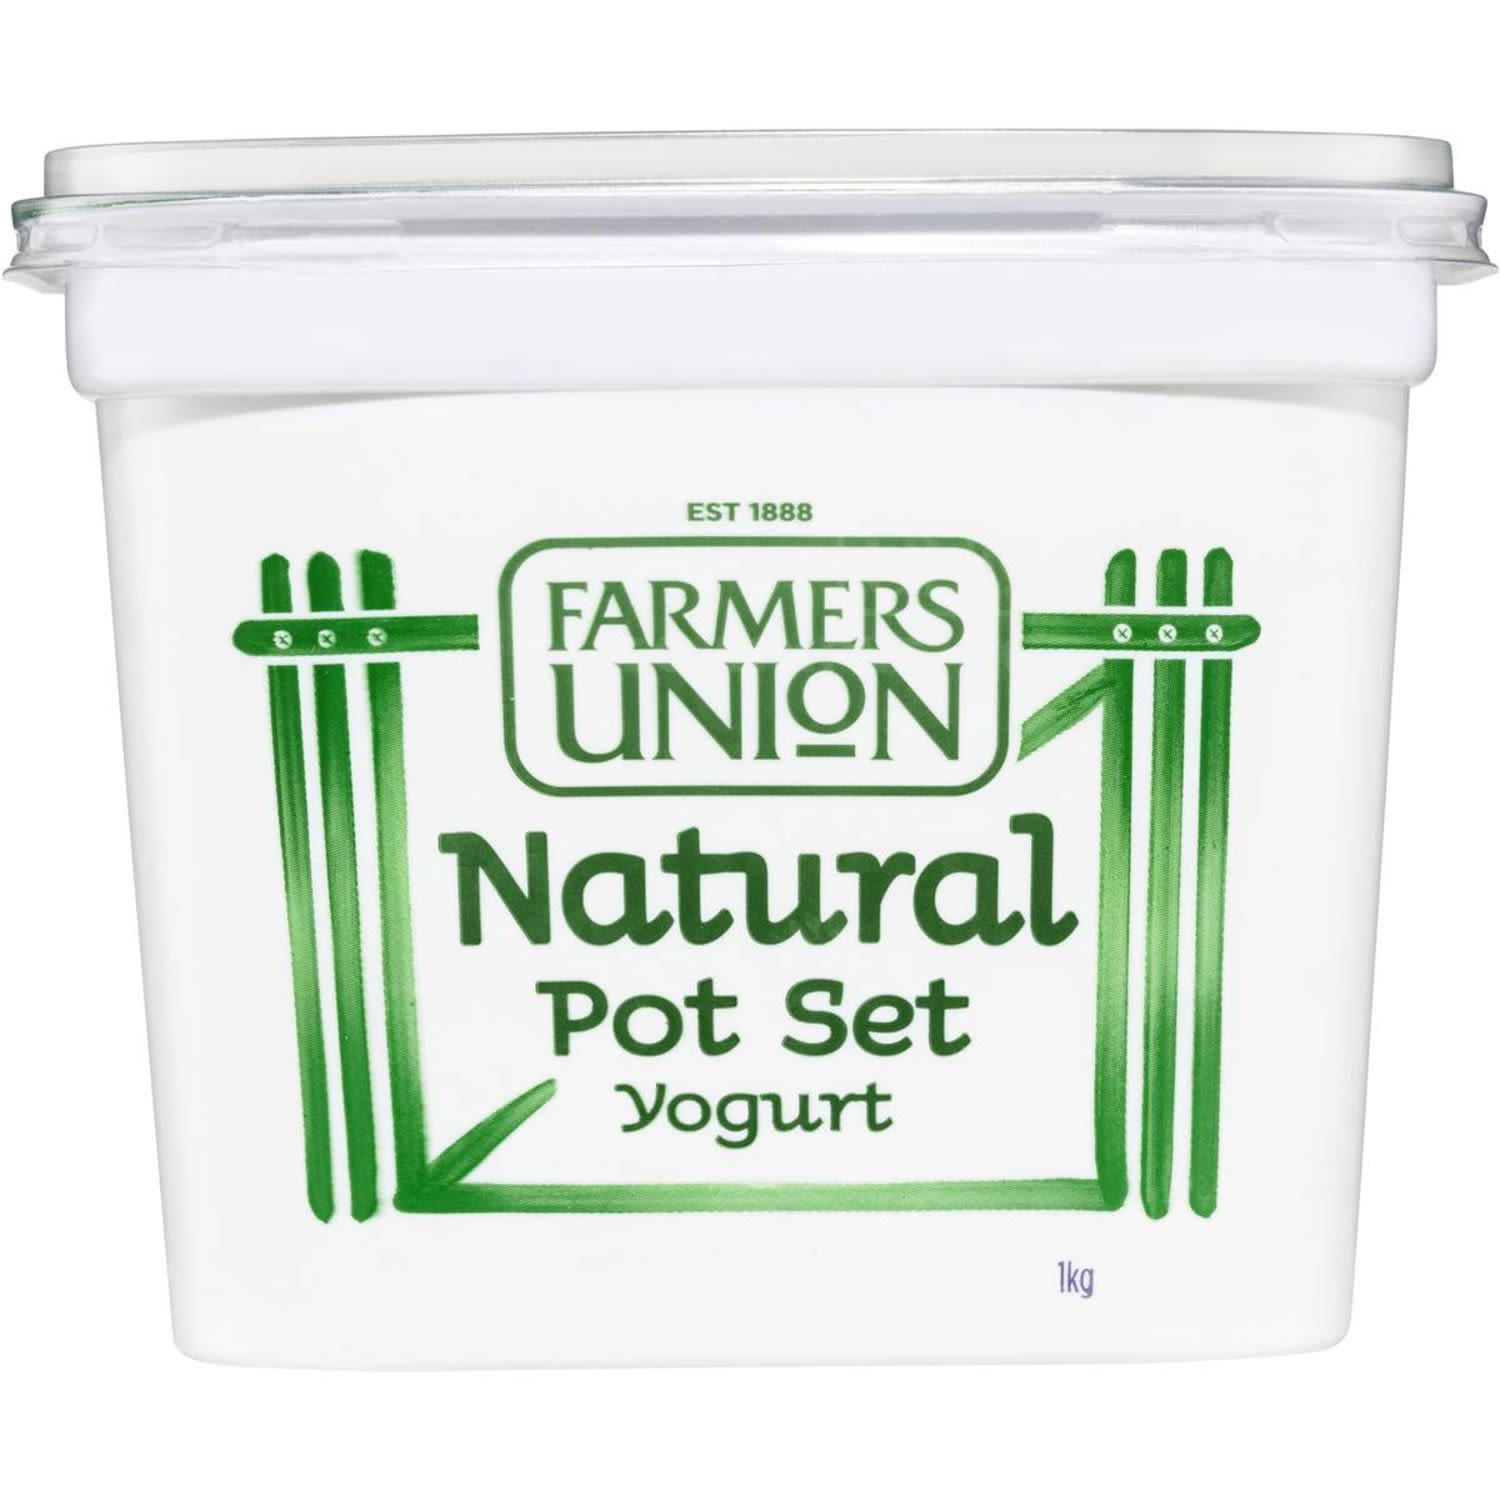 Farmers Union Pot Set Natural Yogurt, 1 Kilogram